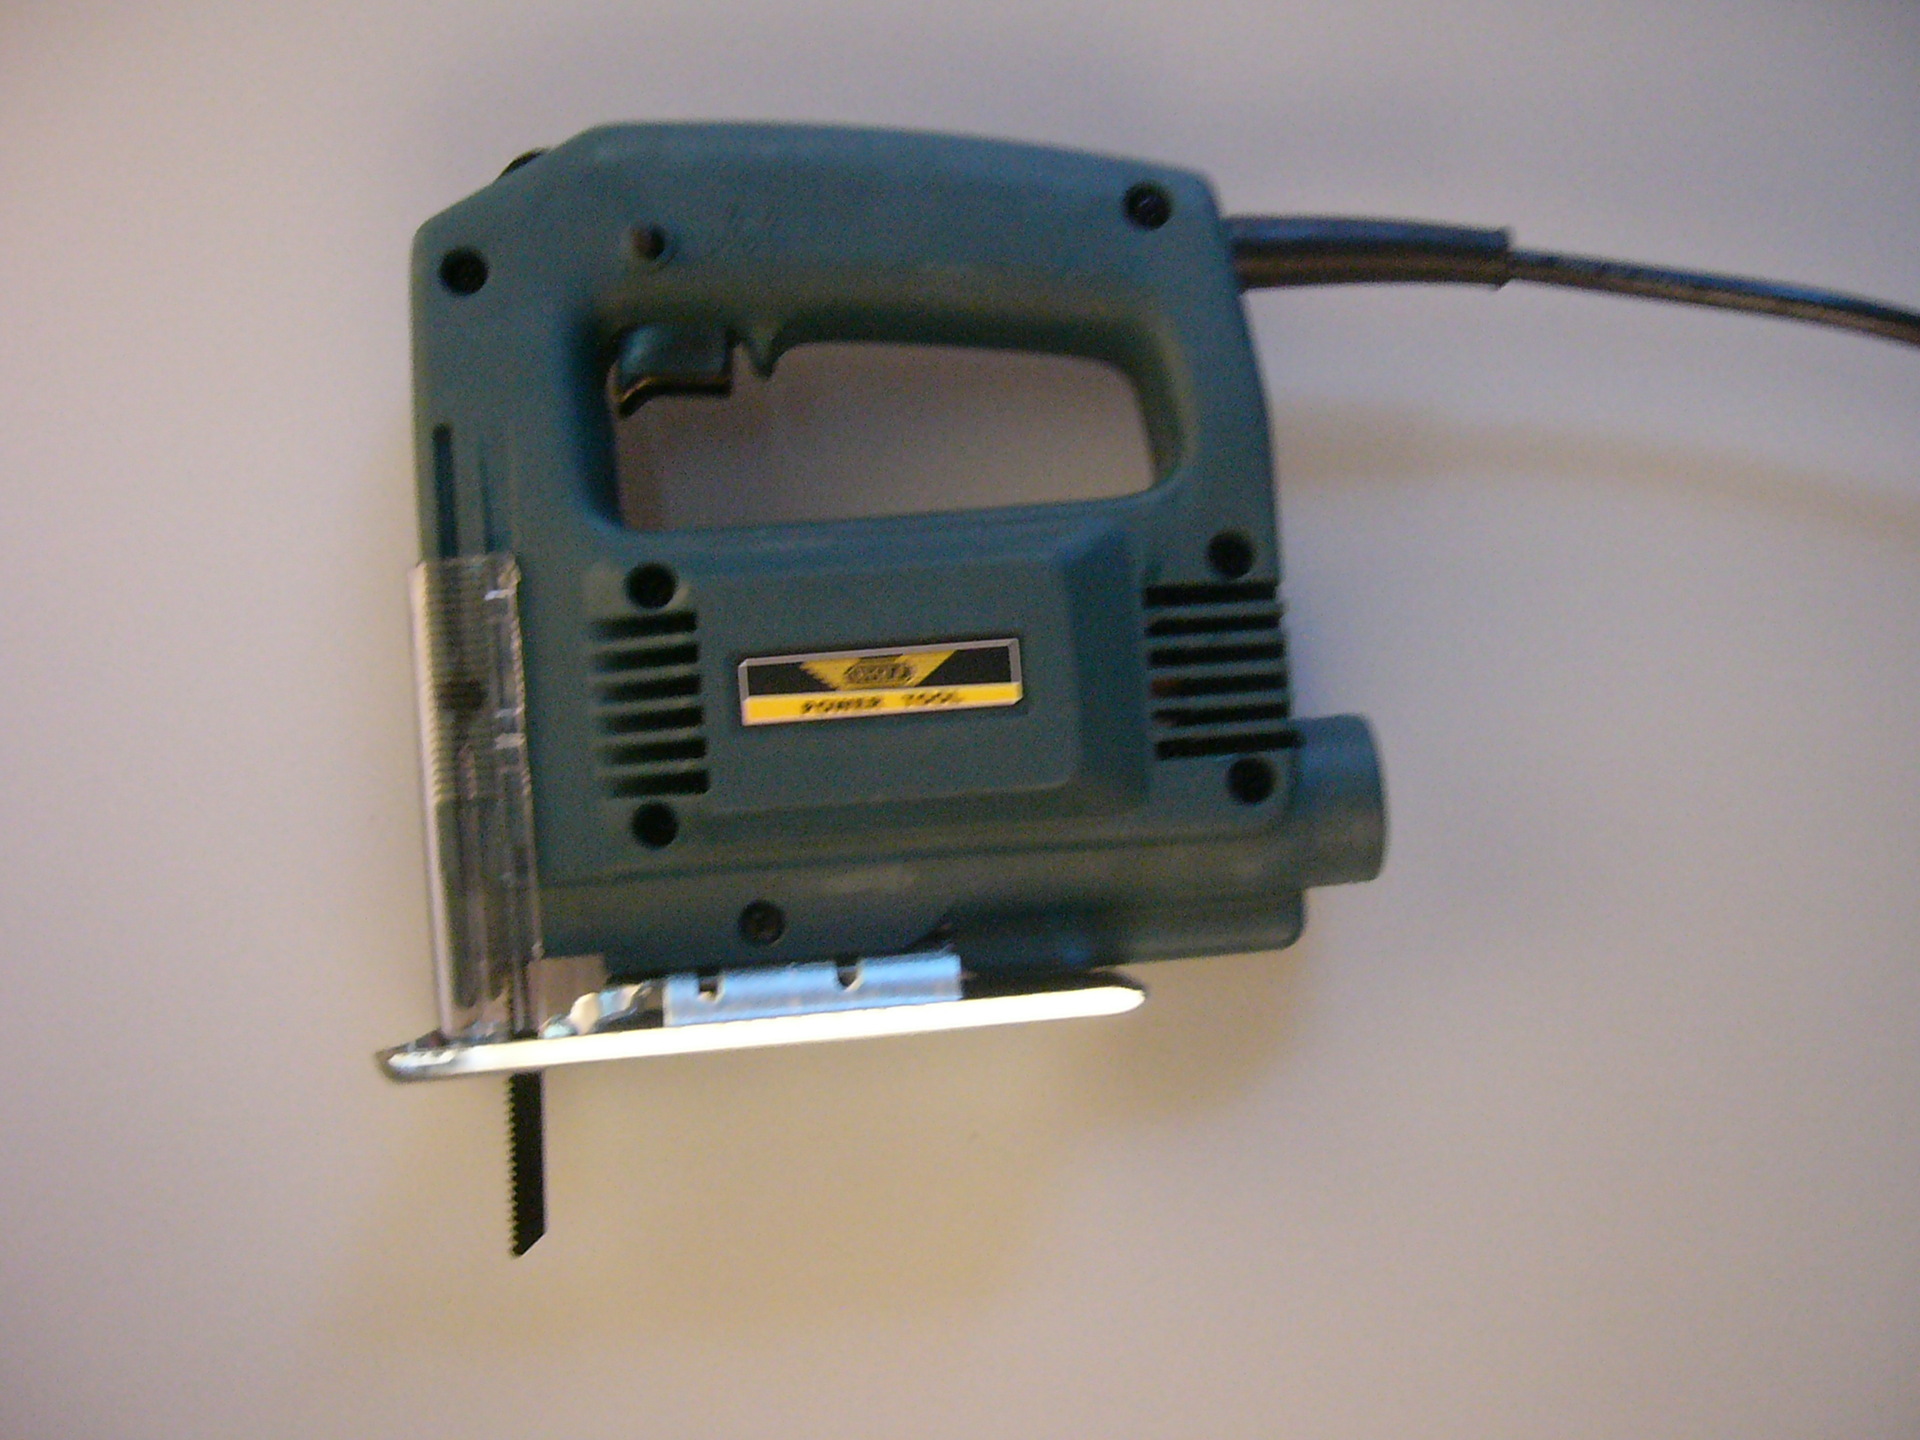 55mm工业型家用型电动曲线锯小型电锯木工锯电动工具批发零售